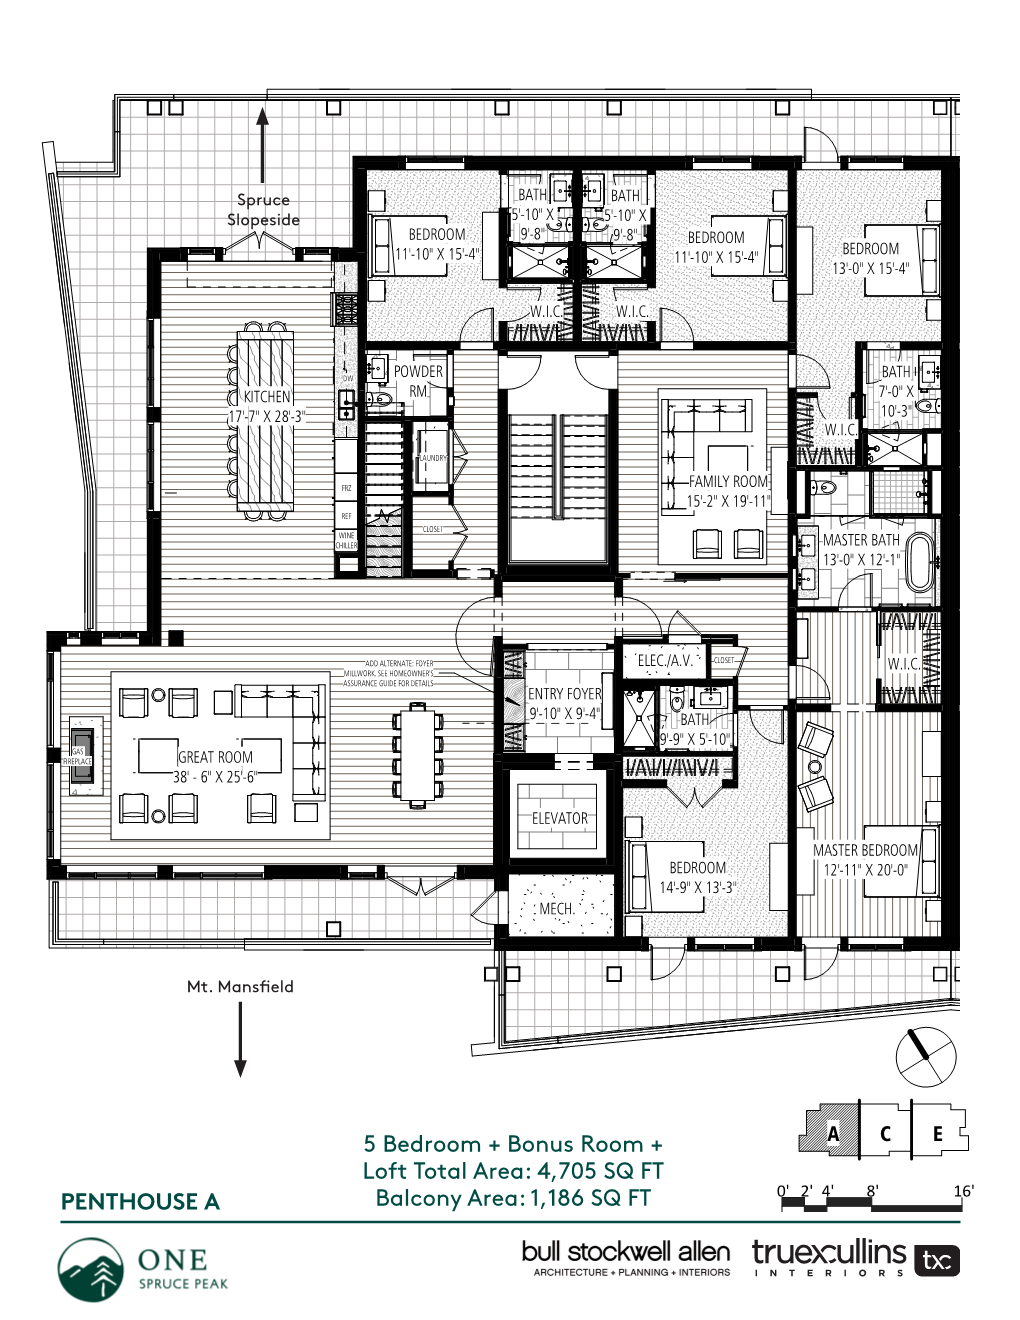 5 Bedroom + Bonus Room + Loft Total Area: 4,705 SQ FT 0'2' 4' 8' 16' PENTHOUSE a LOFT Balcony Area: 1,186 SQ FT Penthouse a Features List